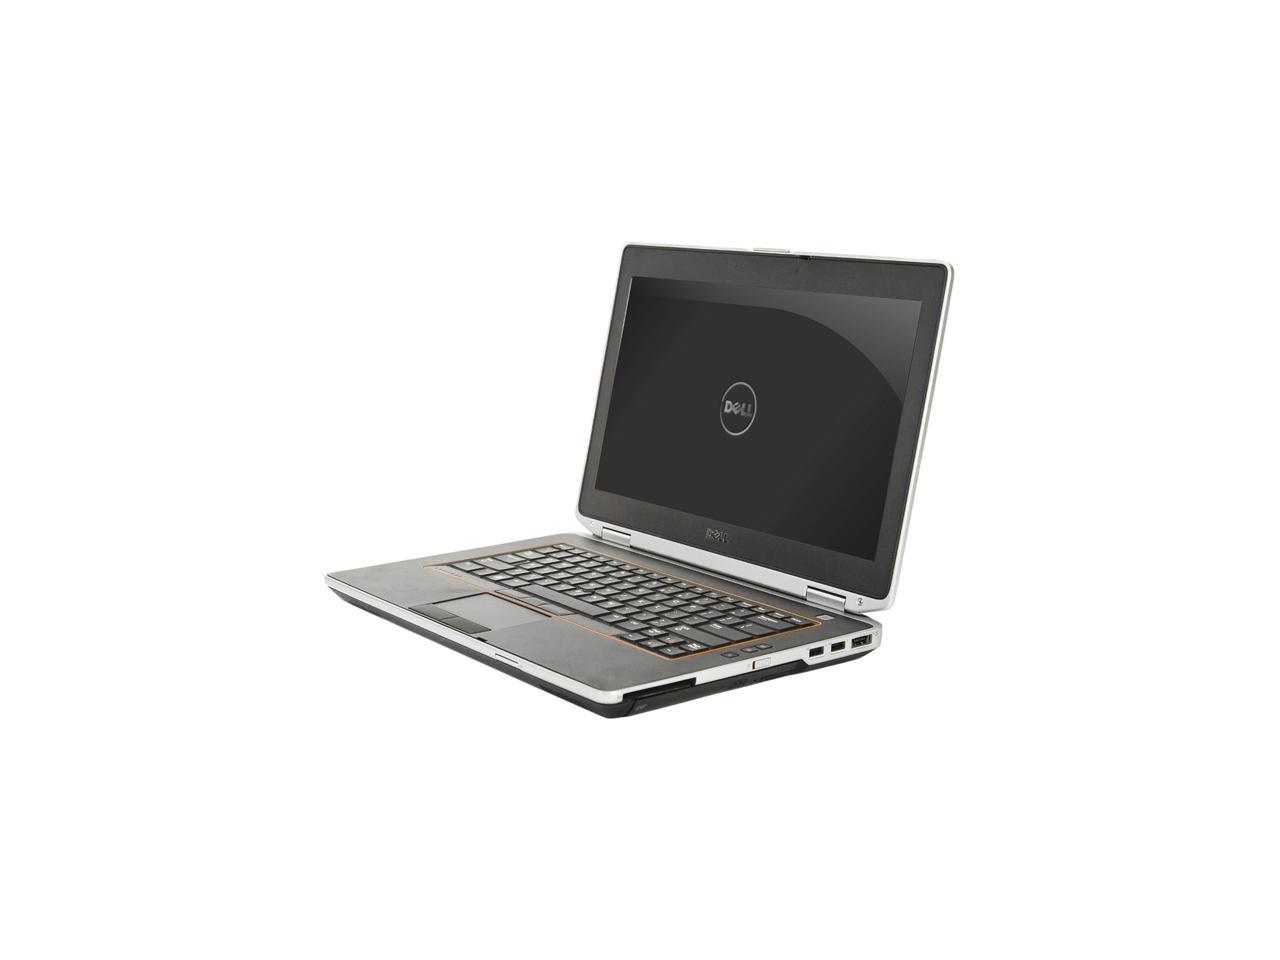 Refurbished: DELL Latitude E6420 Laptop Intel Core i7 2.70 GHz 4 GB